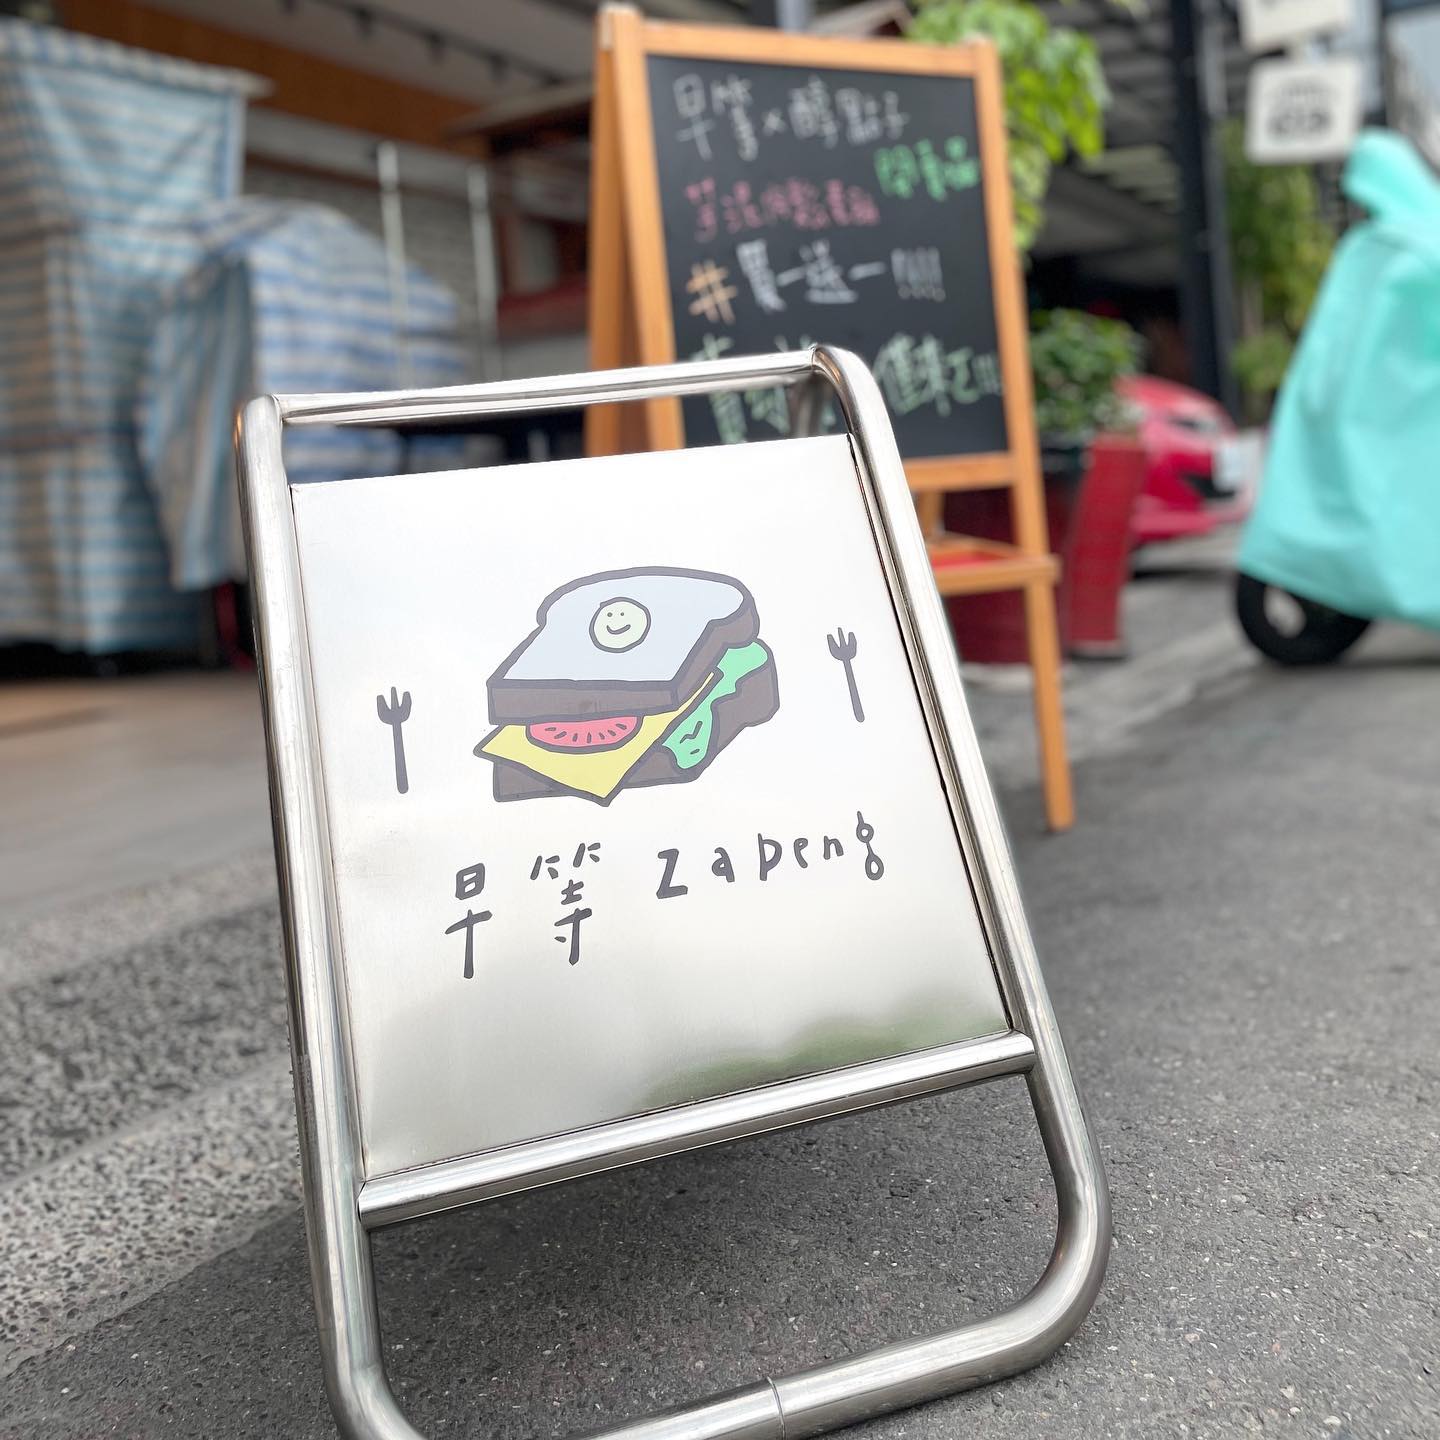 醇點子Position CaféＸ早等ZaDeng 4 - Travel of Rice 小米遊記